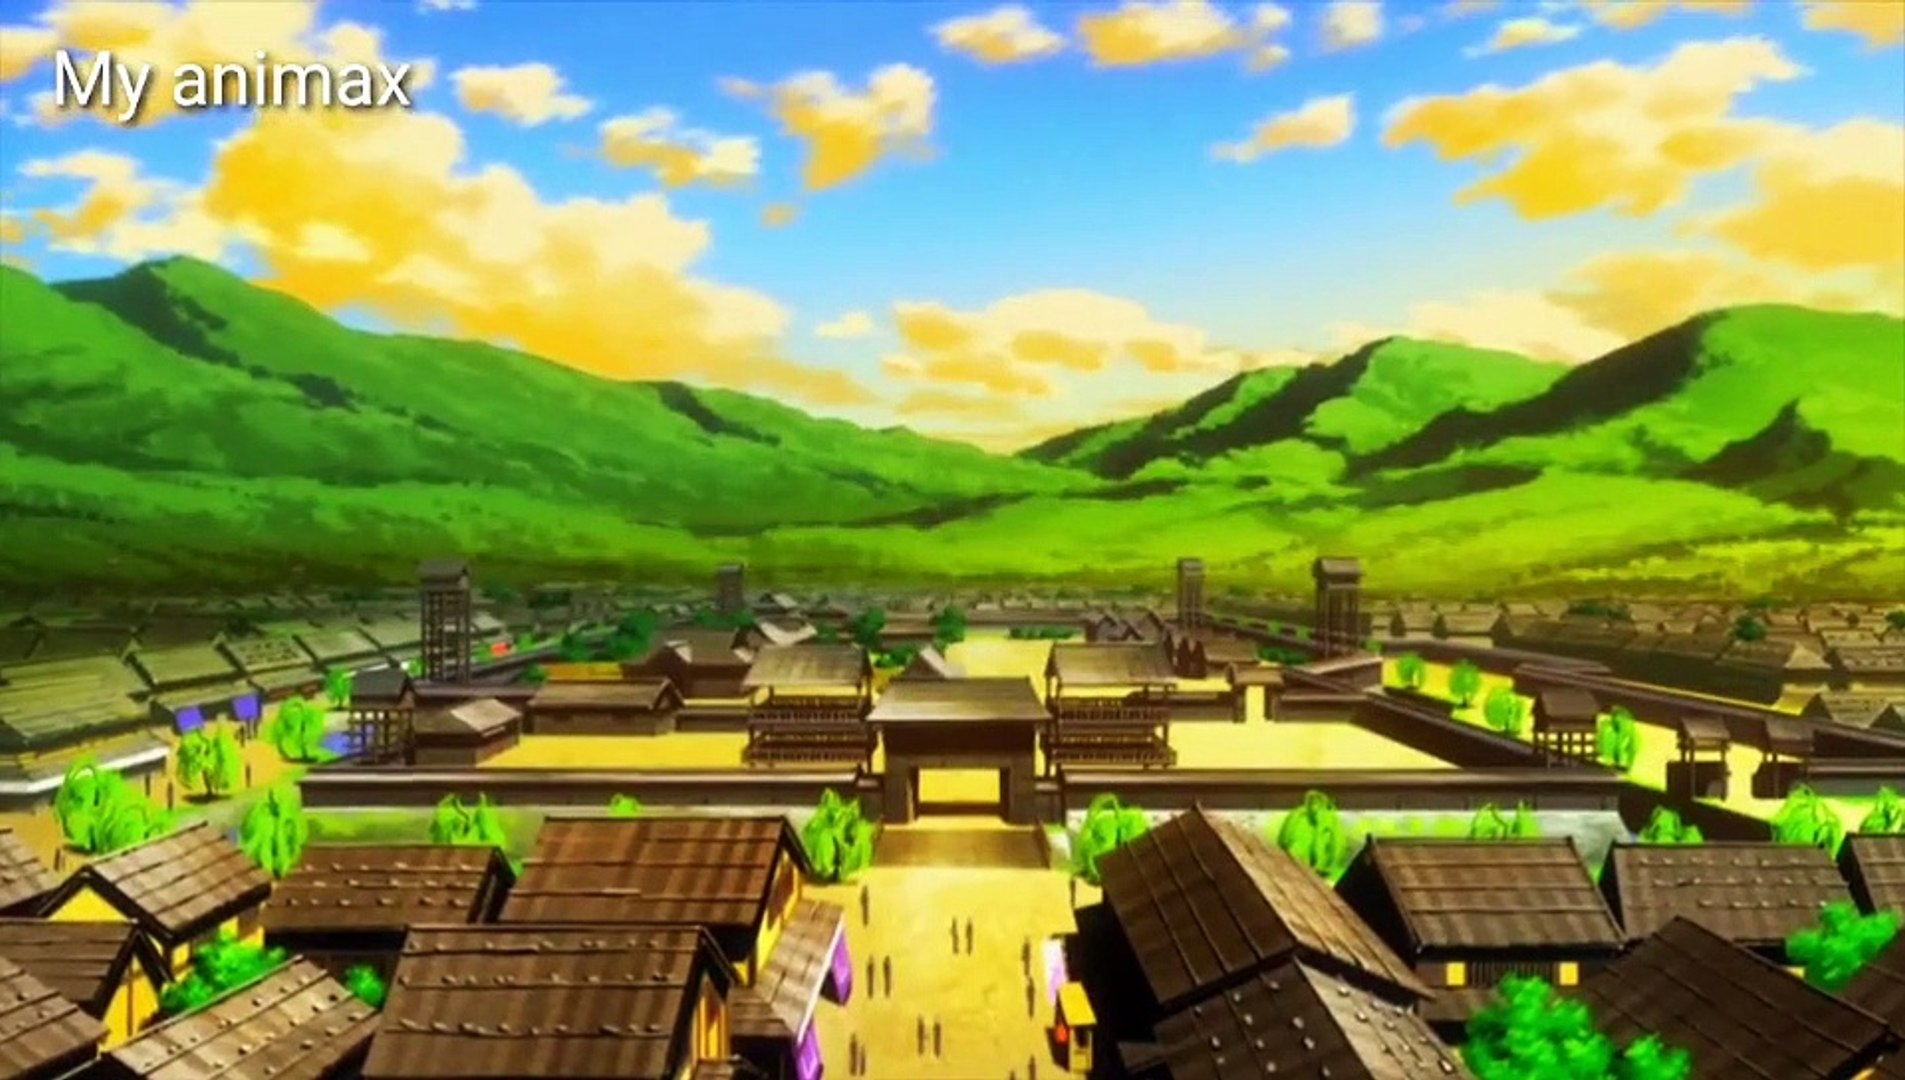 Oda nobuna noyabou english dubbed| Episode 3 english dubbed